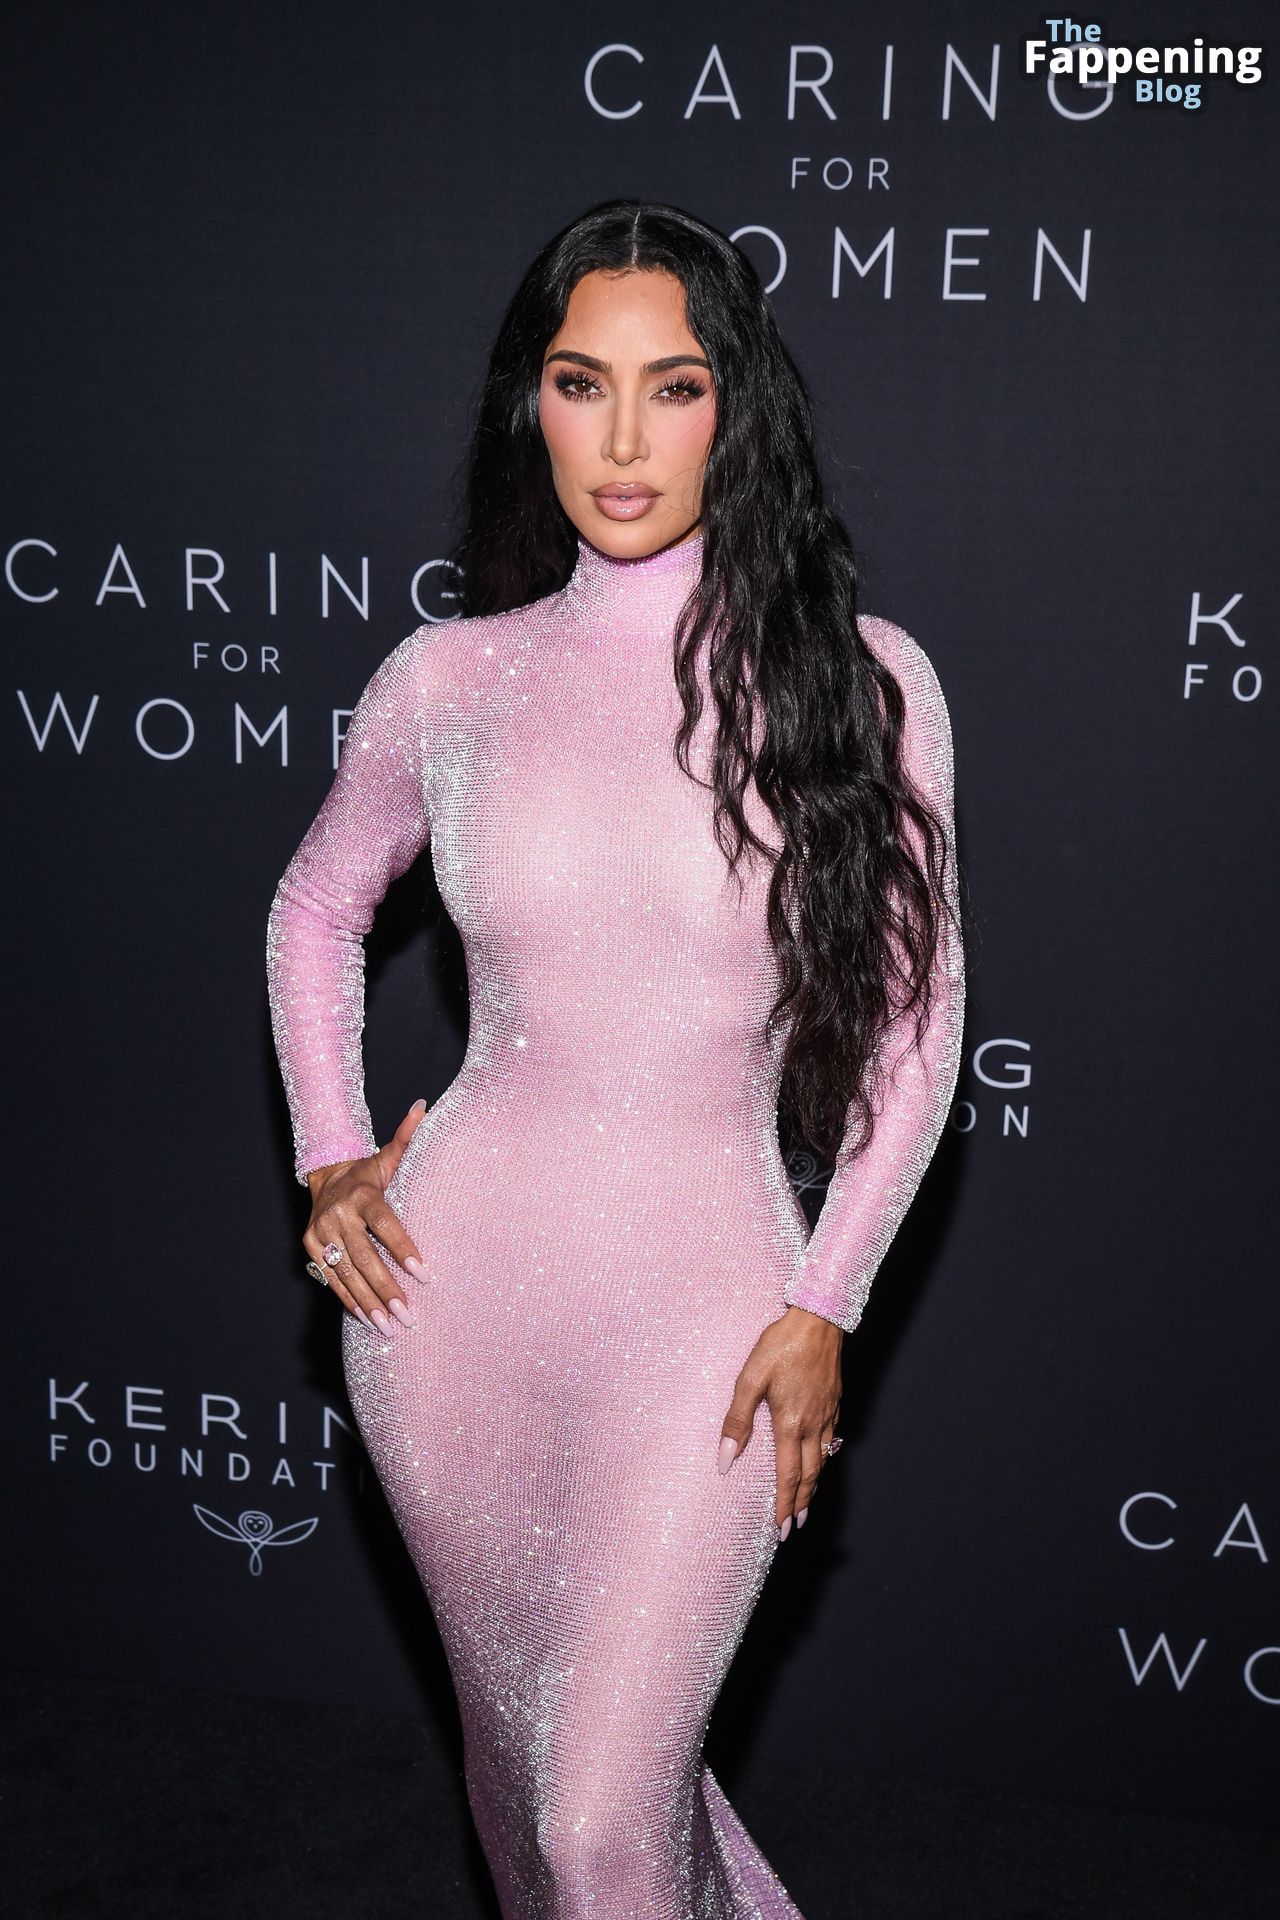 Kim-Kardashian-Sexy-89-The-Fappening-Blog.jpg